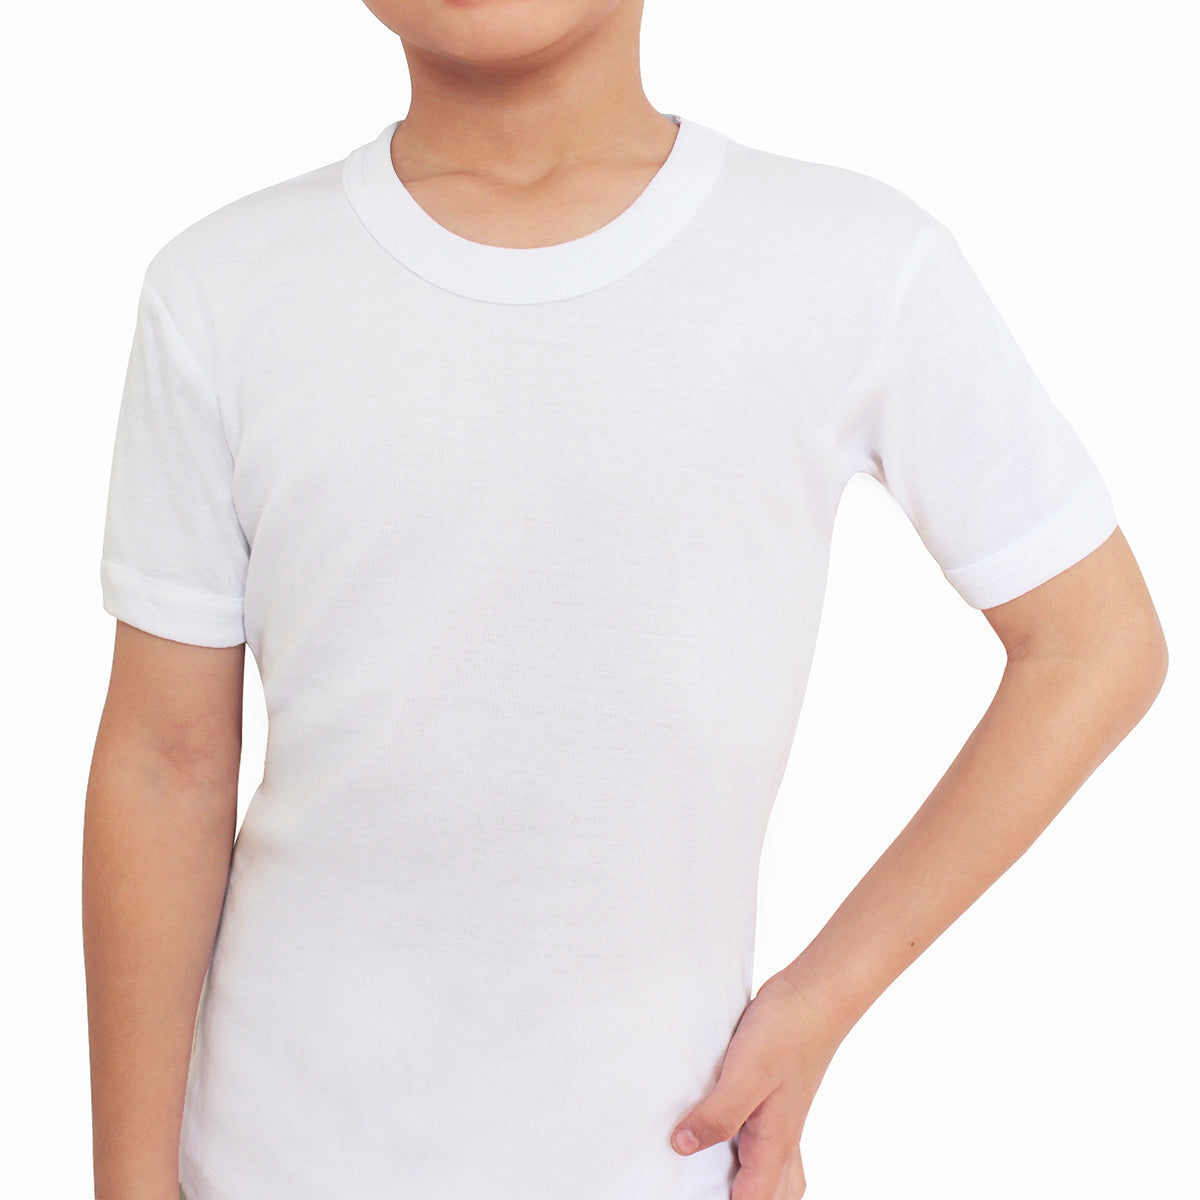 Tais - Camiseta Manga Corta Cuello Polo Niño Algodón